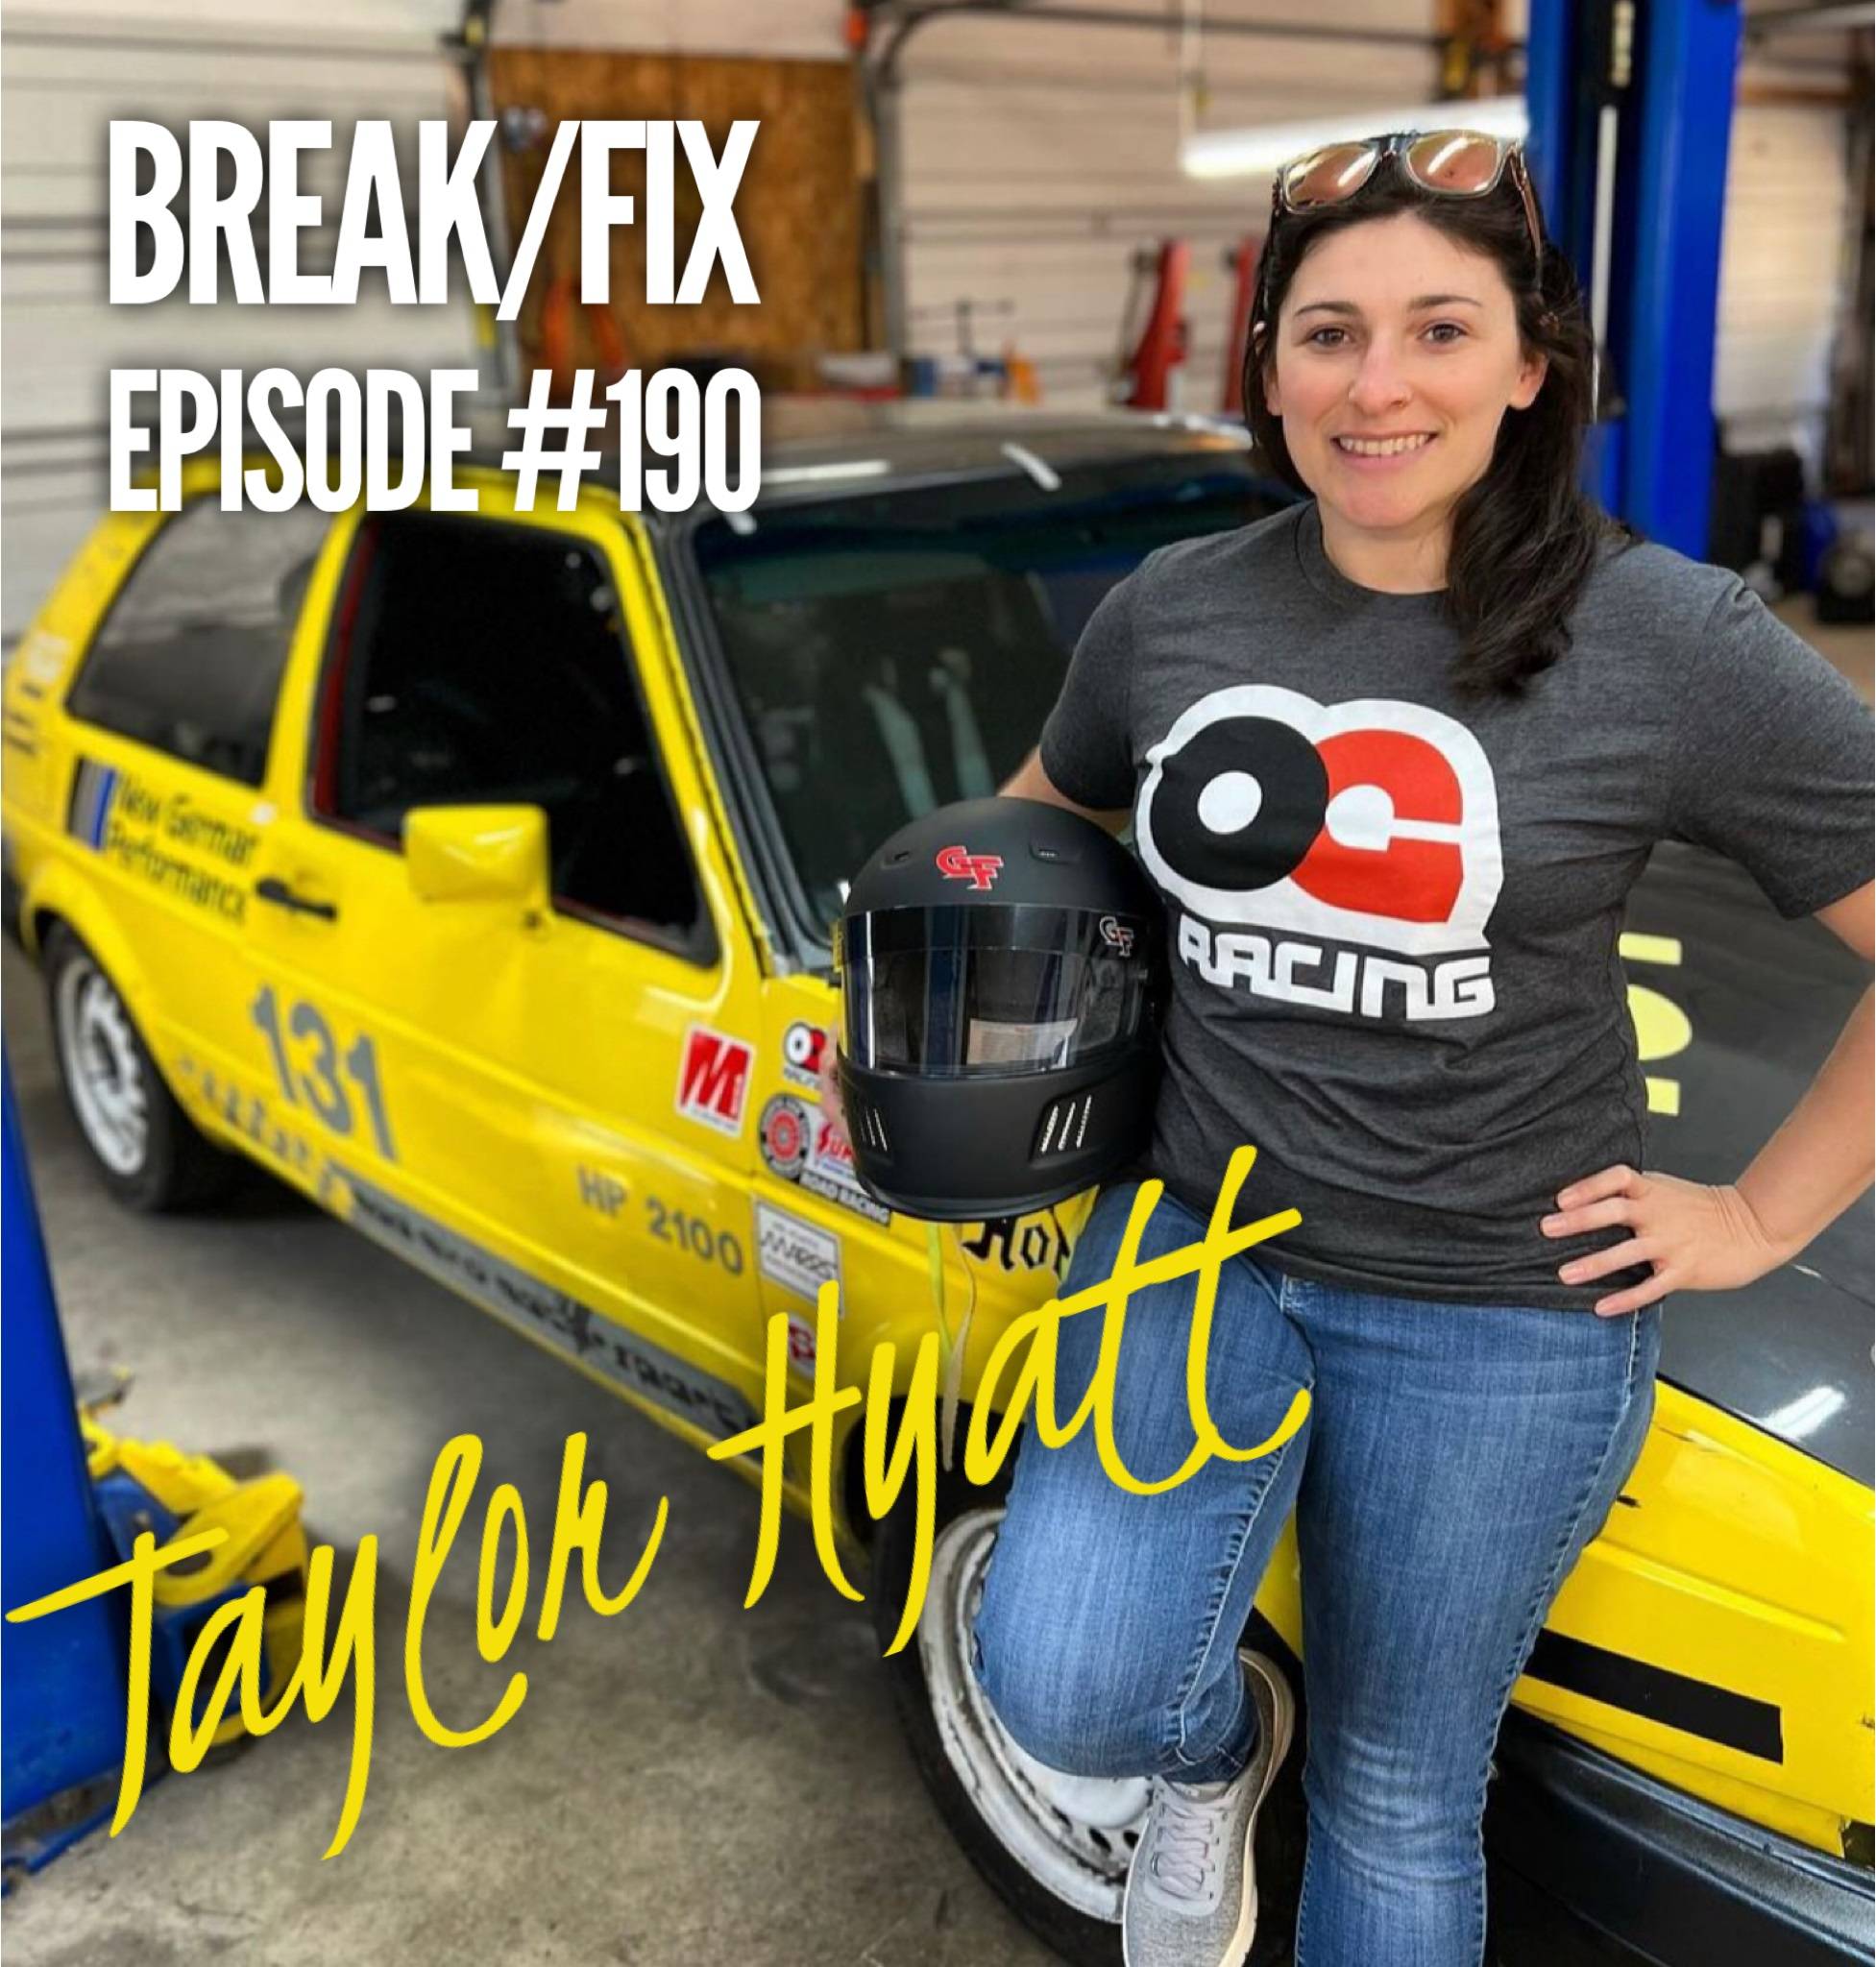 Taylor A. Hyatt on Break/Fix Podcast